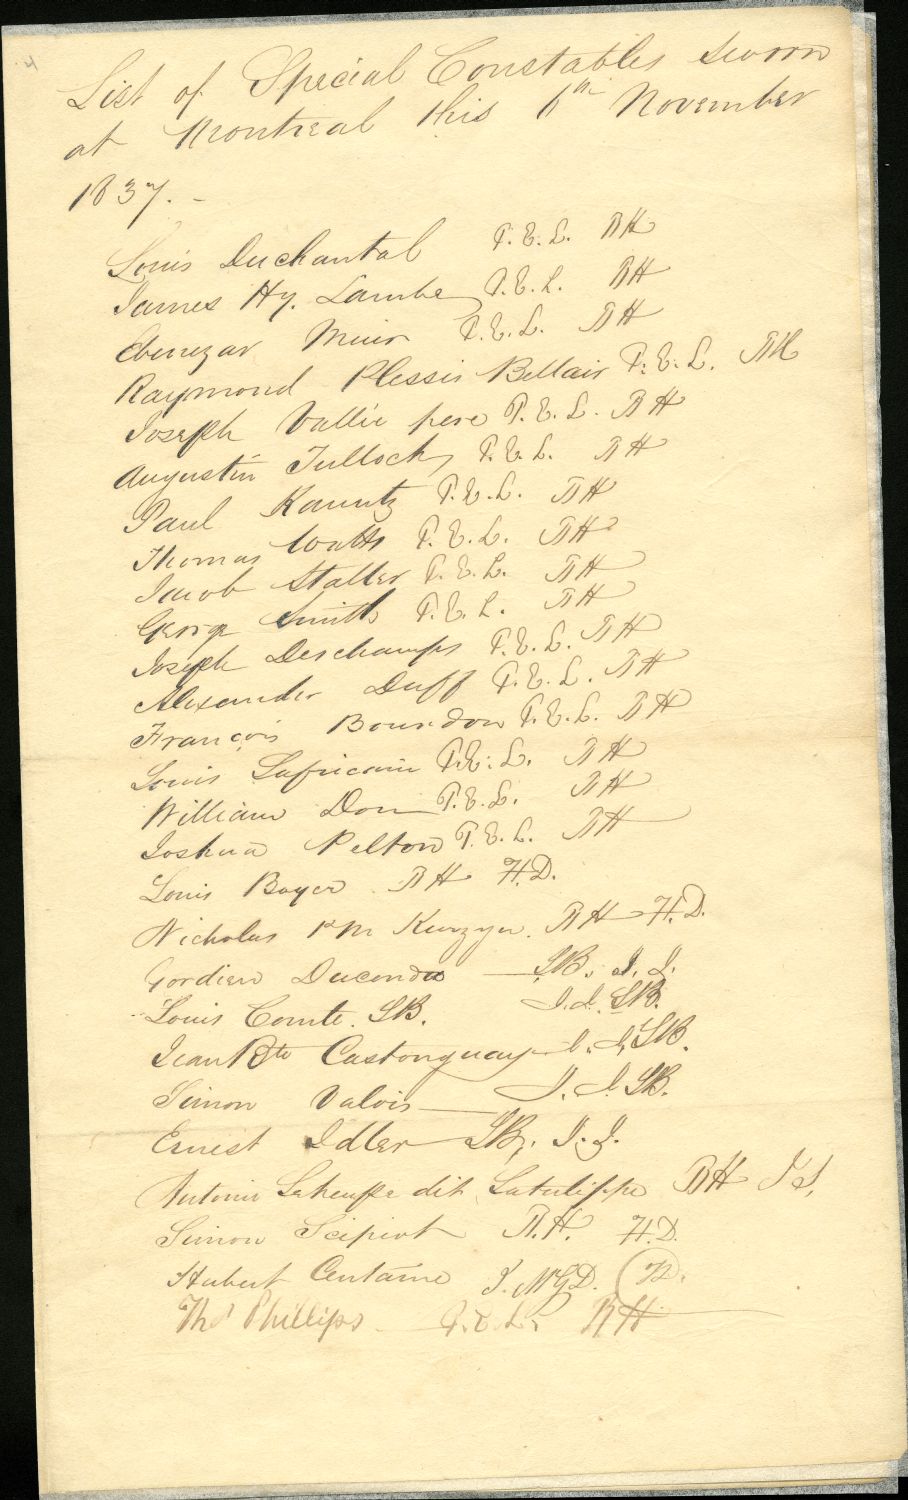 Reproduction d’une liste manuscrite sur un papier jaunâtre.